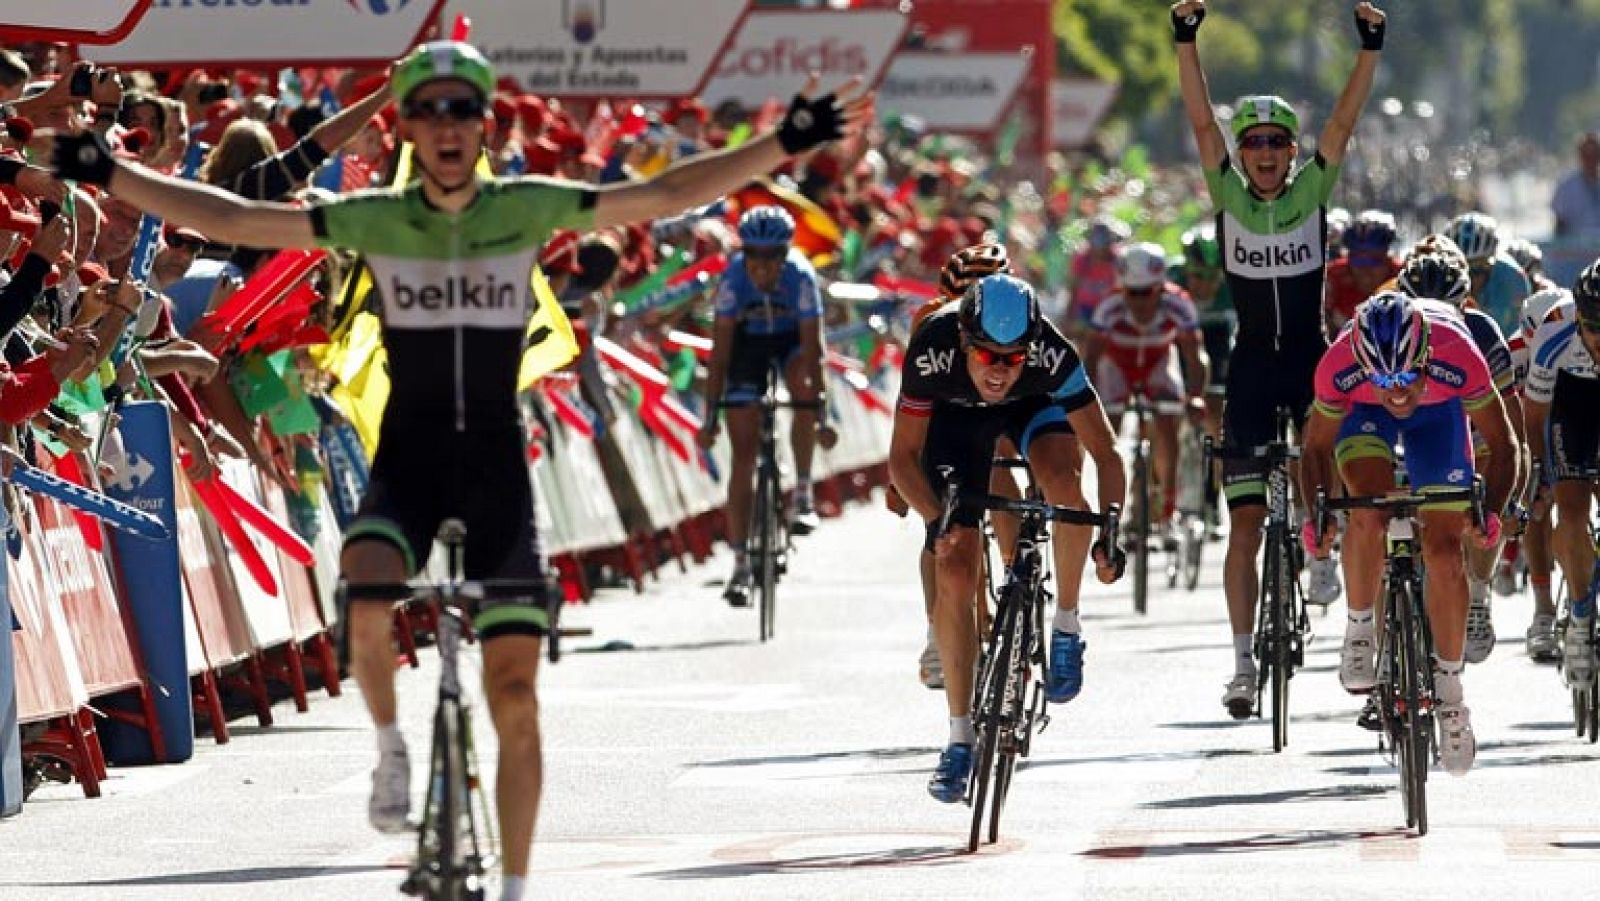 No levantaba cabeza desde el segundo fin de semana del Tour de Francia pero Bauke Mollema (Belkin) ha podido resarcirse gracias a la victoria en la 17ª etapa de la Vuelta Ciclista a España 2013. El viento y los abanicos hicieron la selección y en el pelotón no estaban todos los más rápidos. Sin embargo, las quinielas daban como posibles vencedores a galgos como Boasson Hagen, Richeze, Farrar o incluso Cancellara. Nadie contaba con el ataque del holandés de Belkin al paso de la pancarta del último kilómetro.